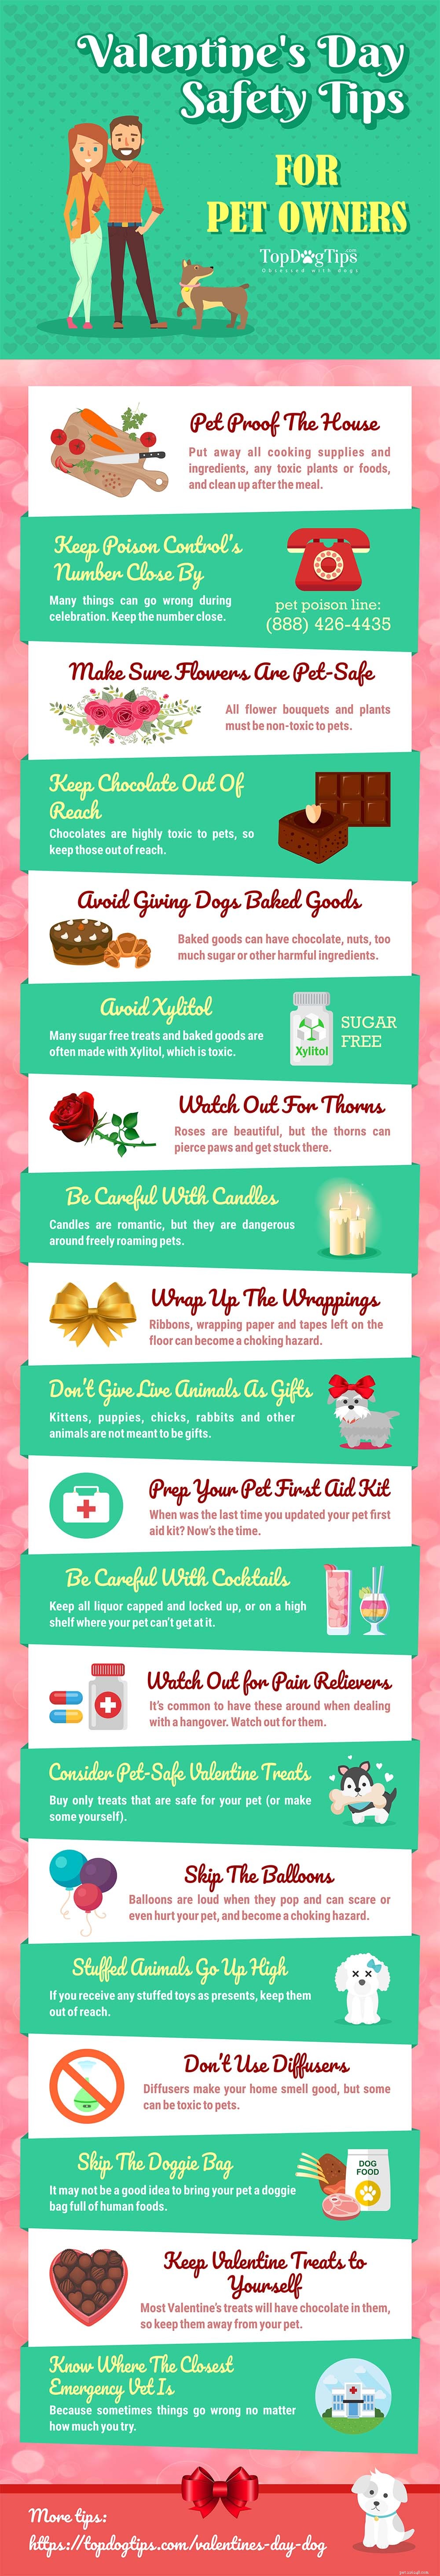 20 dicas de segurança para o Dia dos Namorados para donos de animais de estimação [Infográfico]